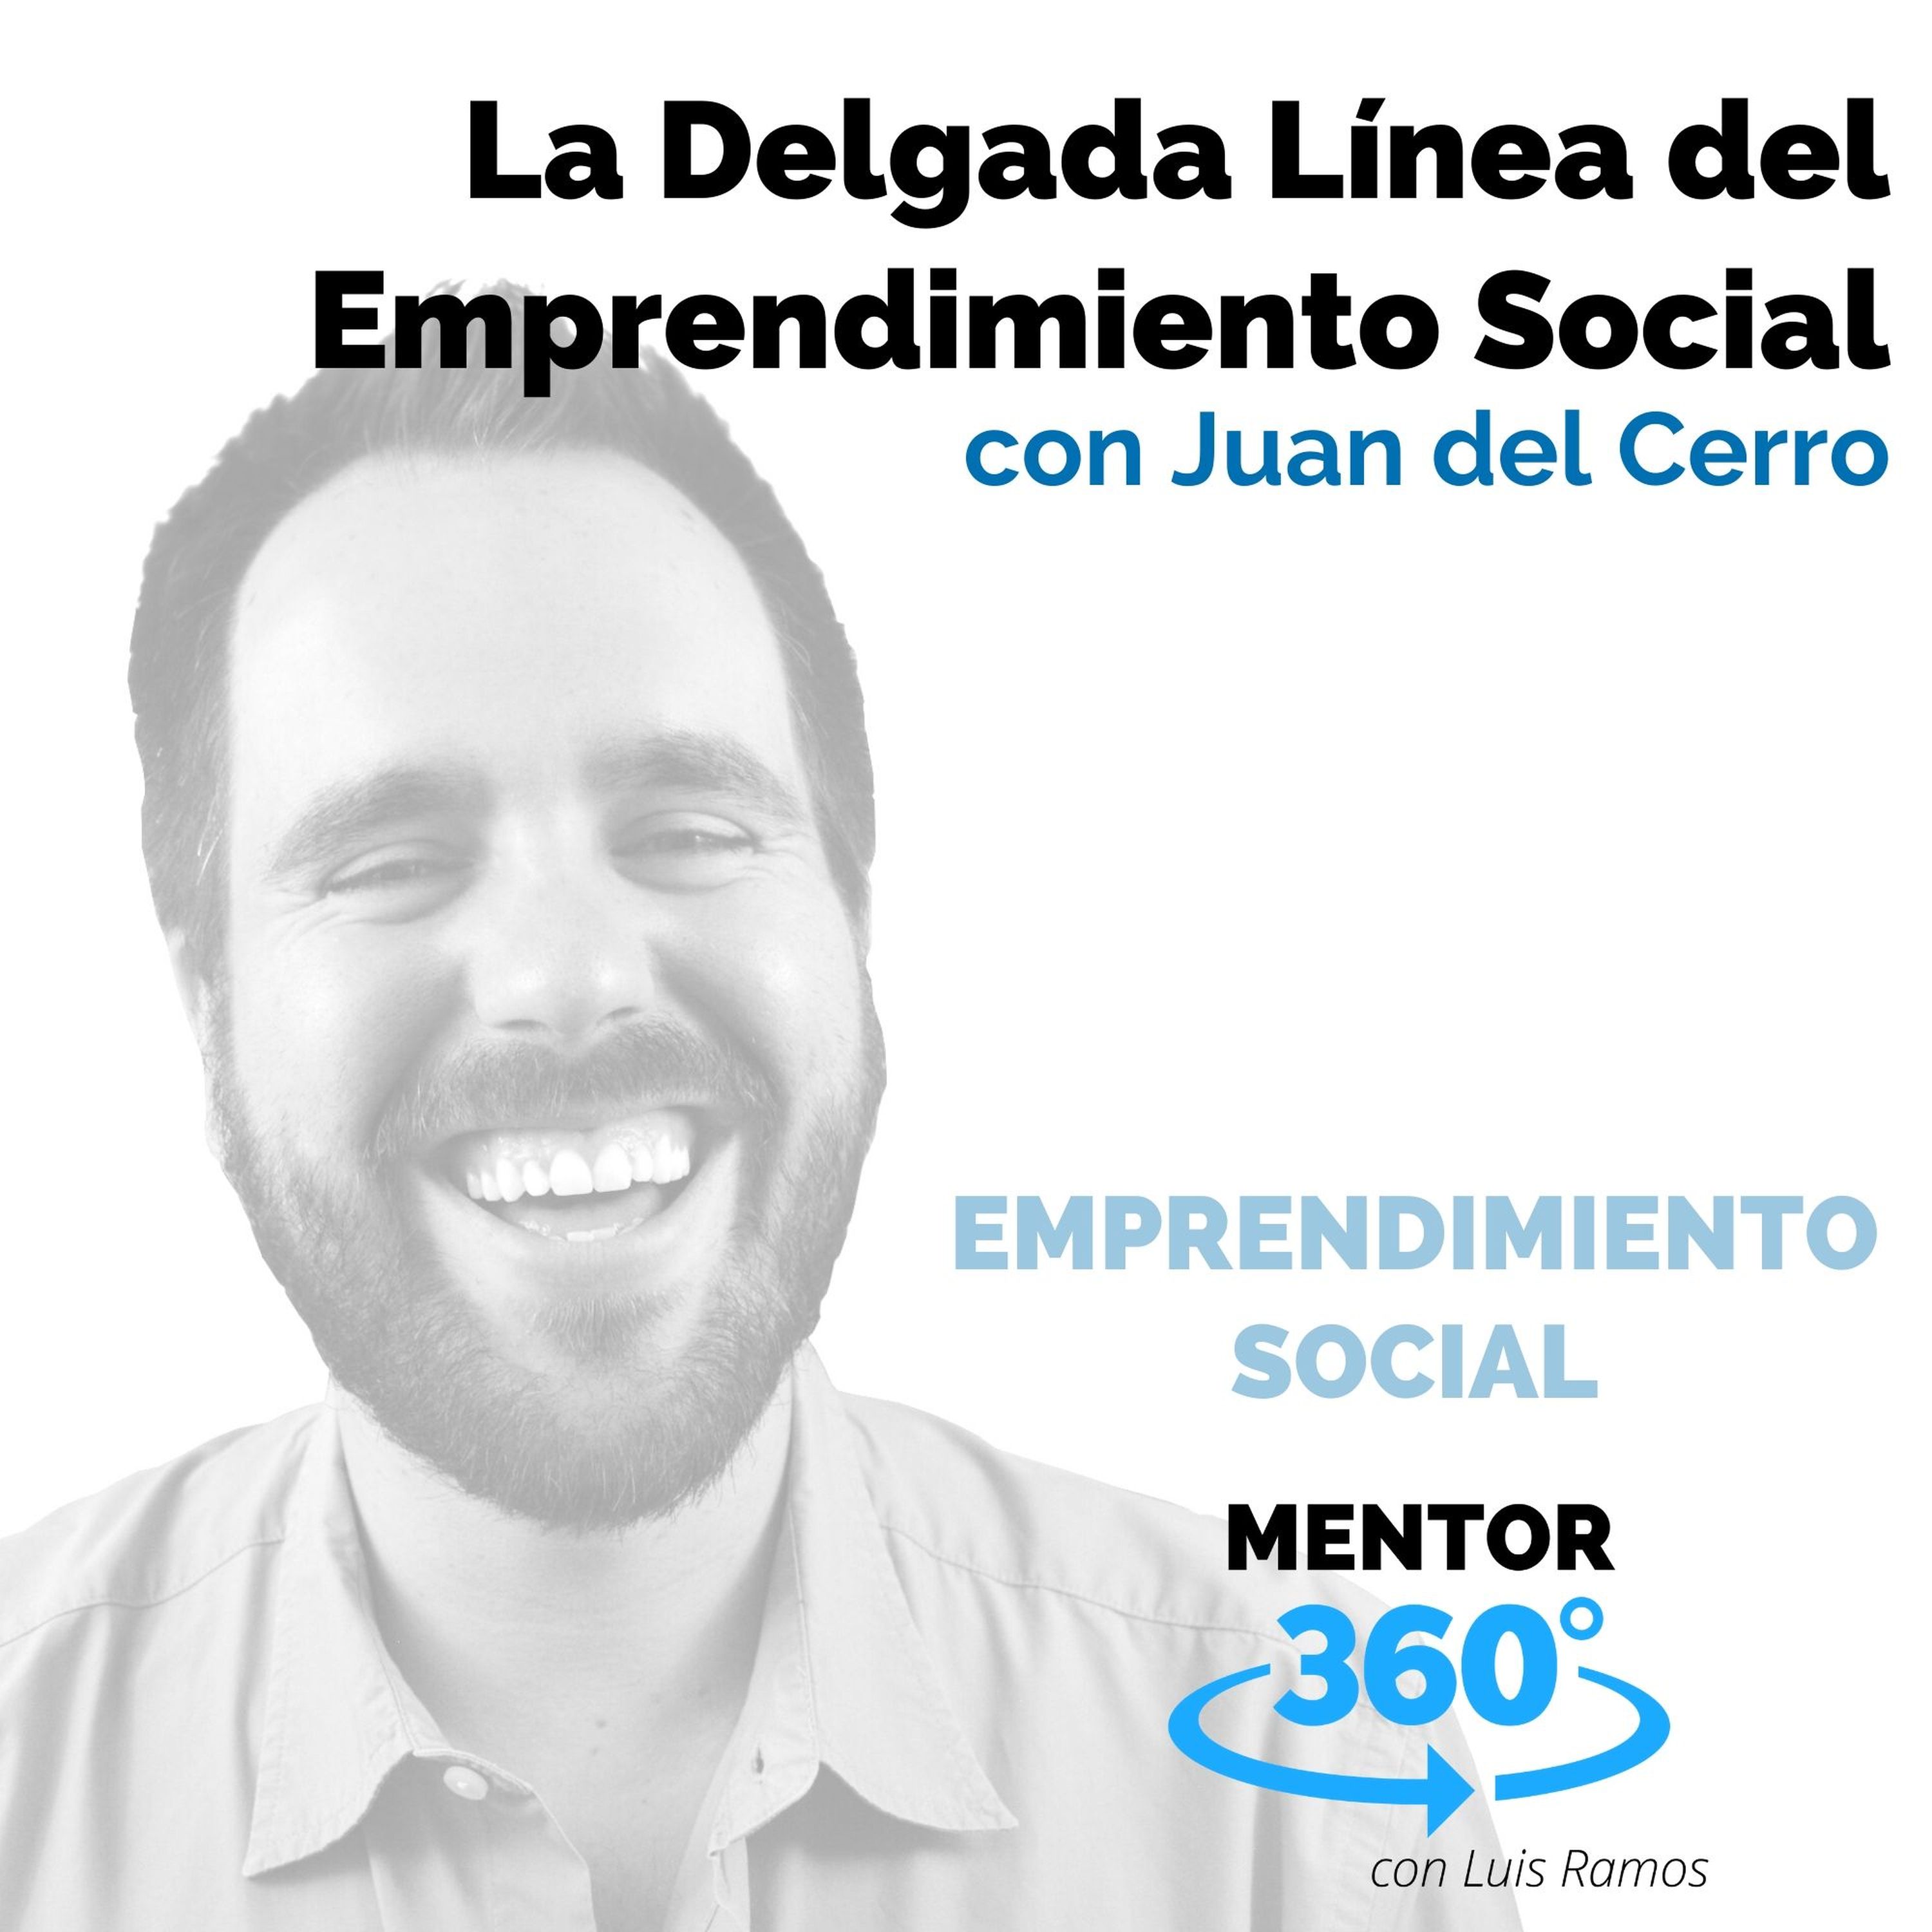 La Delgada Línea del Emprendimiento Social, con Juan del Cerro - EMPRENDIMIENTO SOCIAL